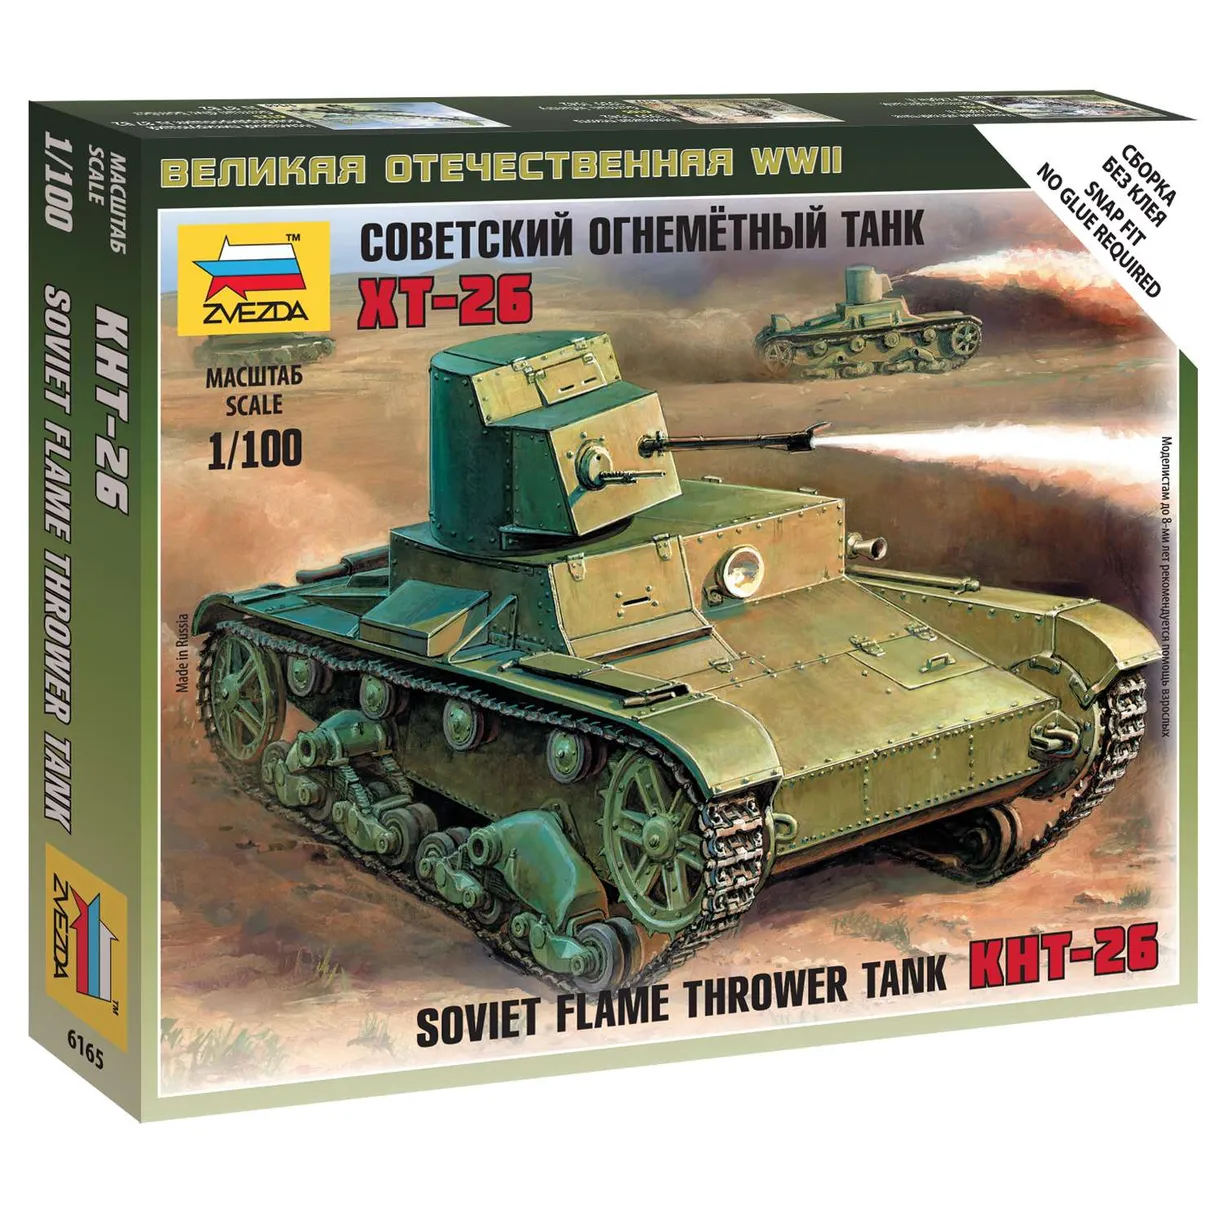 Сборная модель "Советский огнеметный танк Т-26"